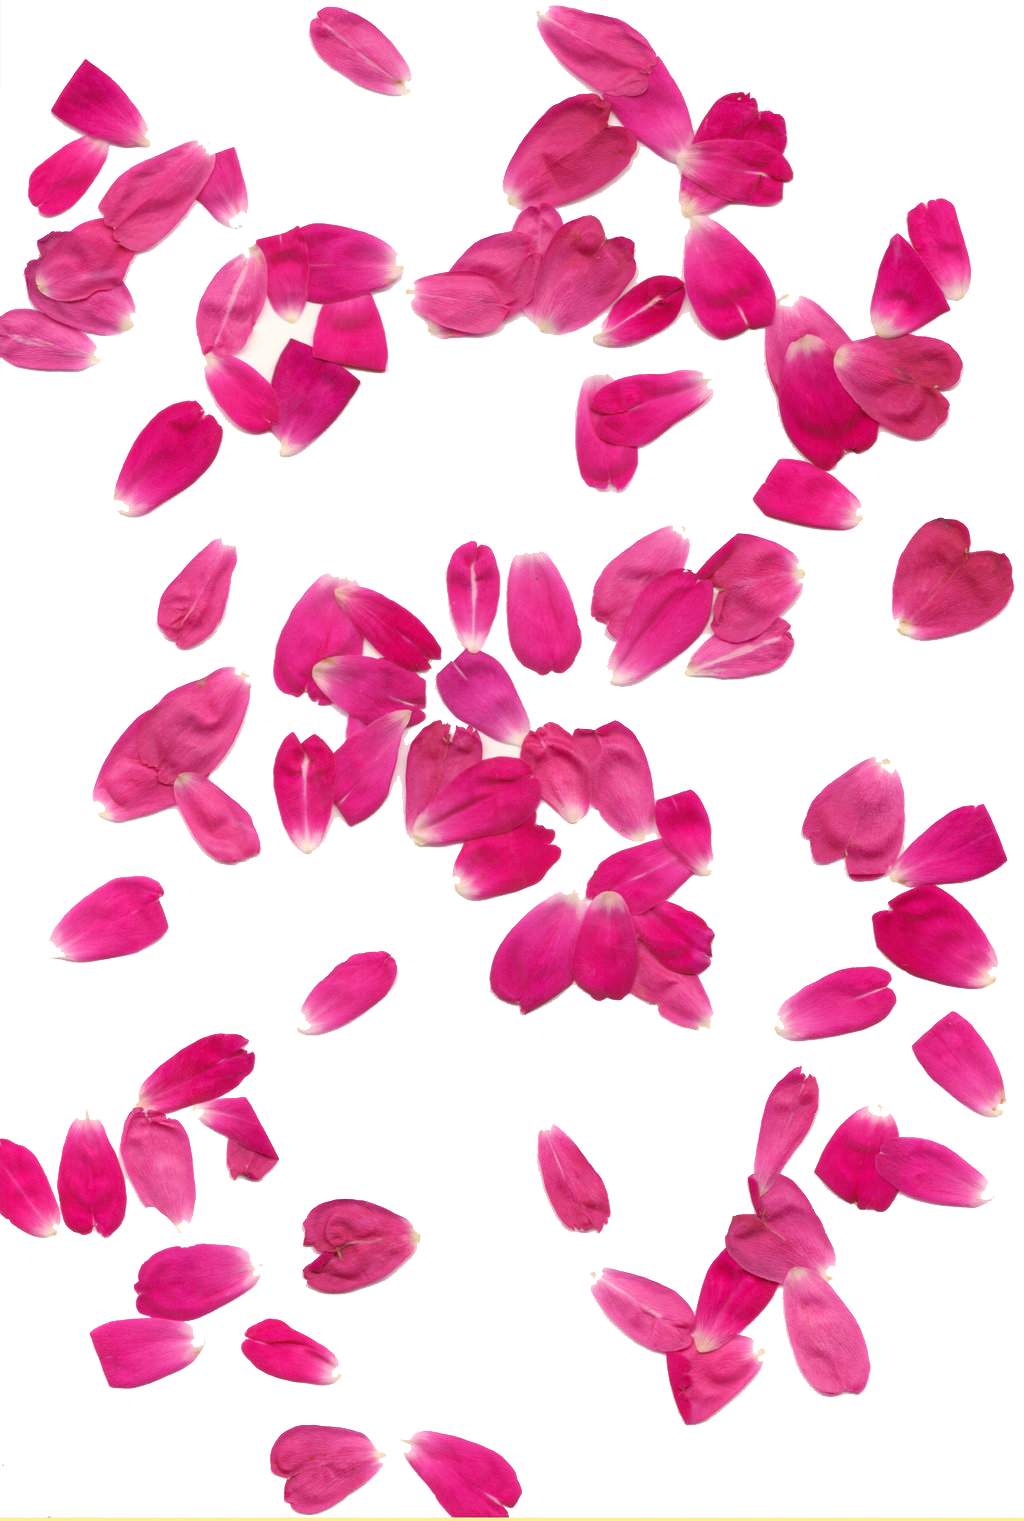 rose petals transparent